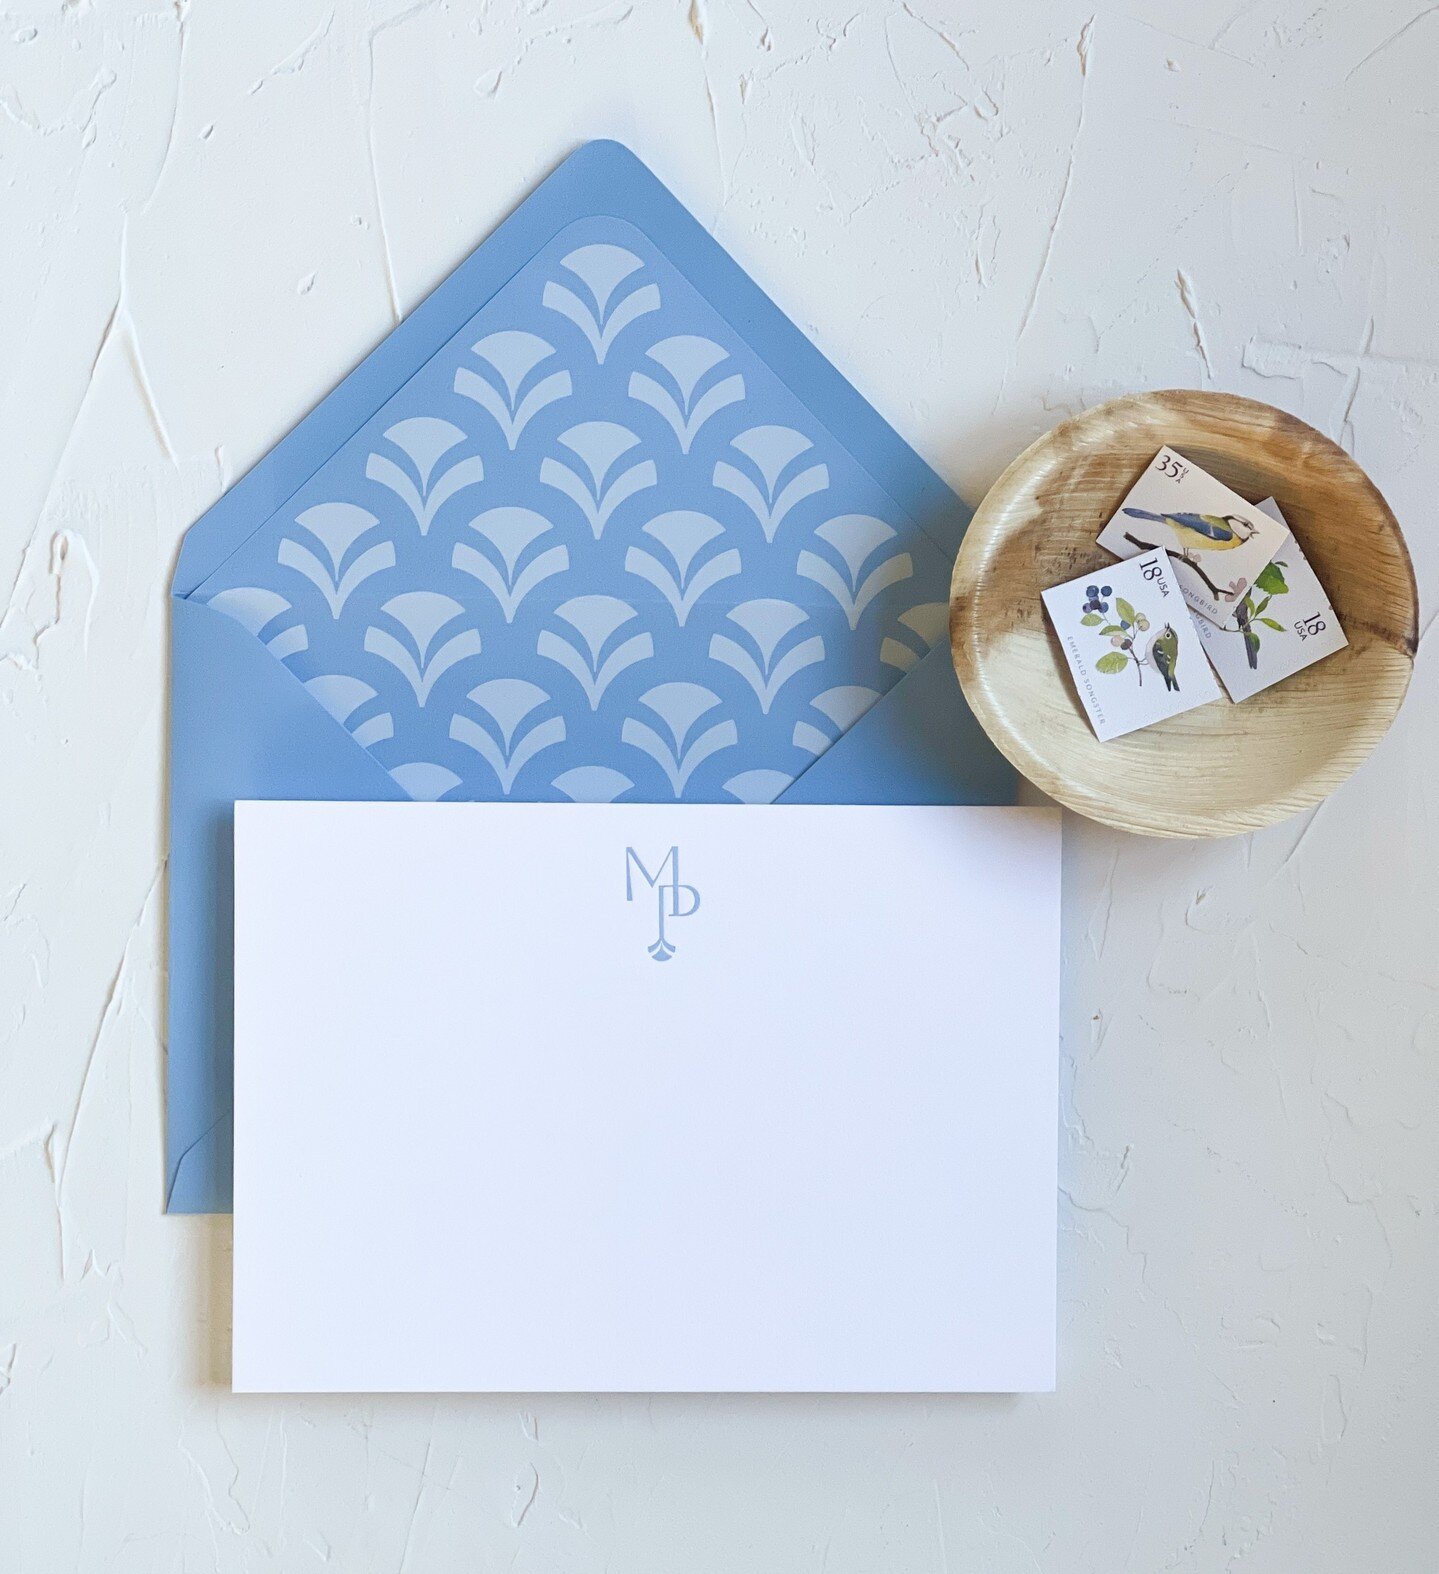 You've Got Mail – ephemera: invitations, stationery